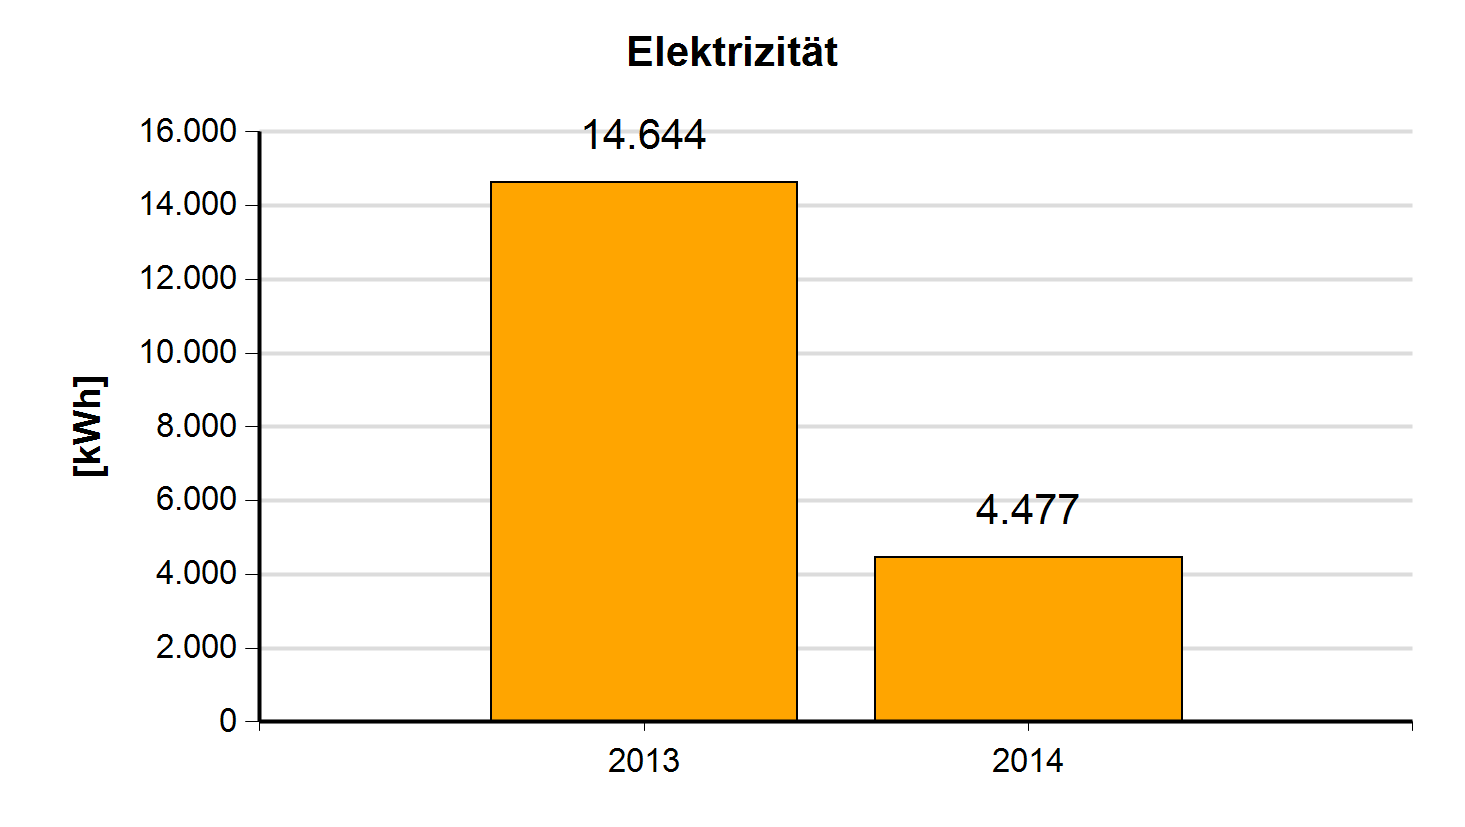 5.11.2 Entwicklung der Jahreswerte für Strom, Wärme, Wasser Elektrizität Jahr Verbrauch 2014 4.